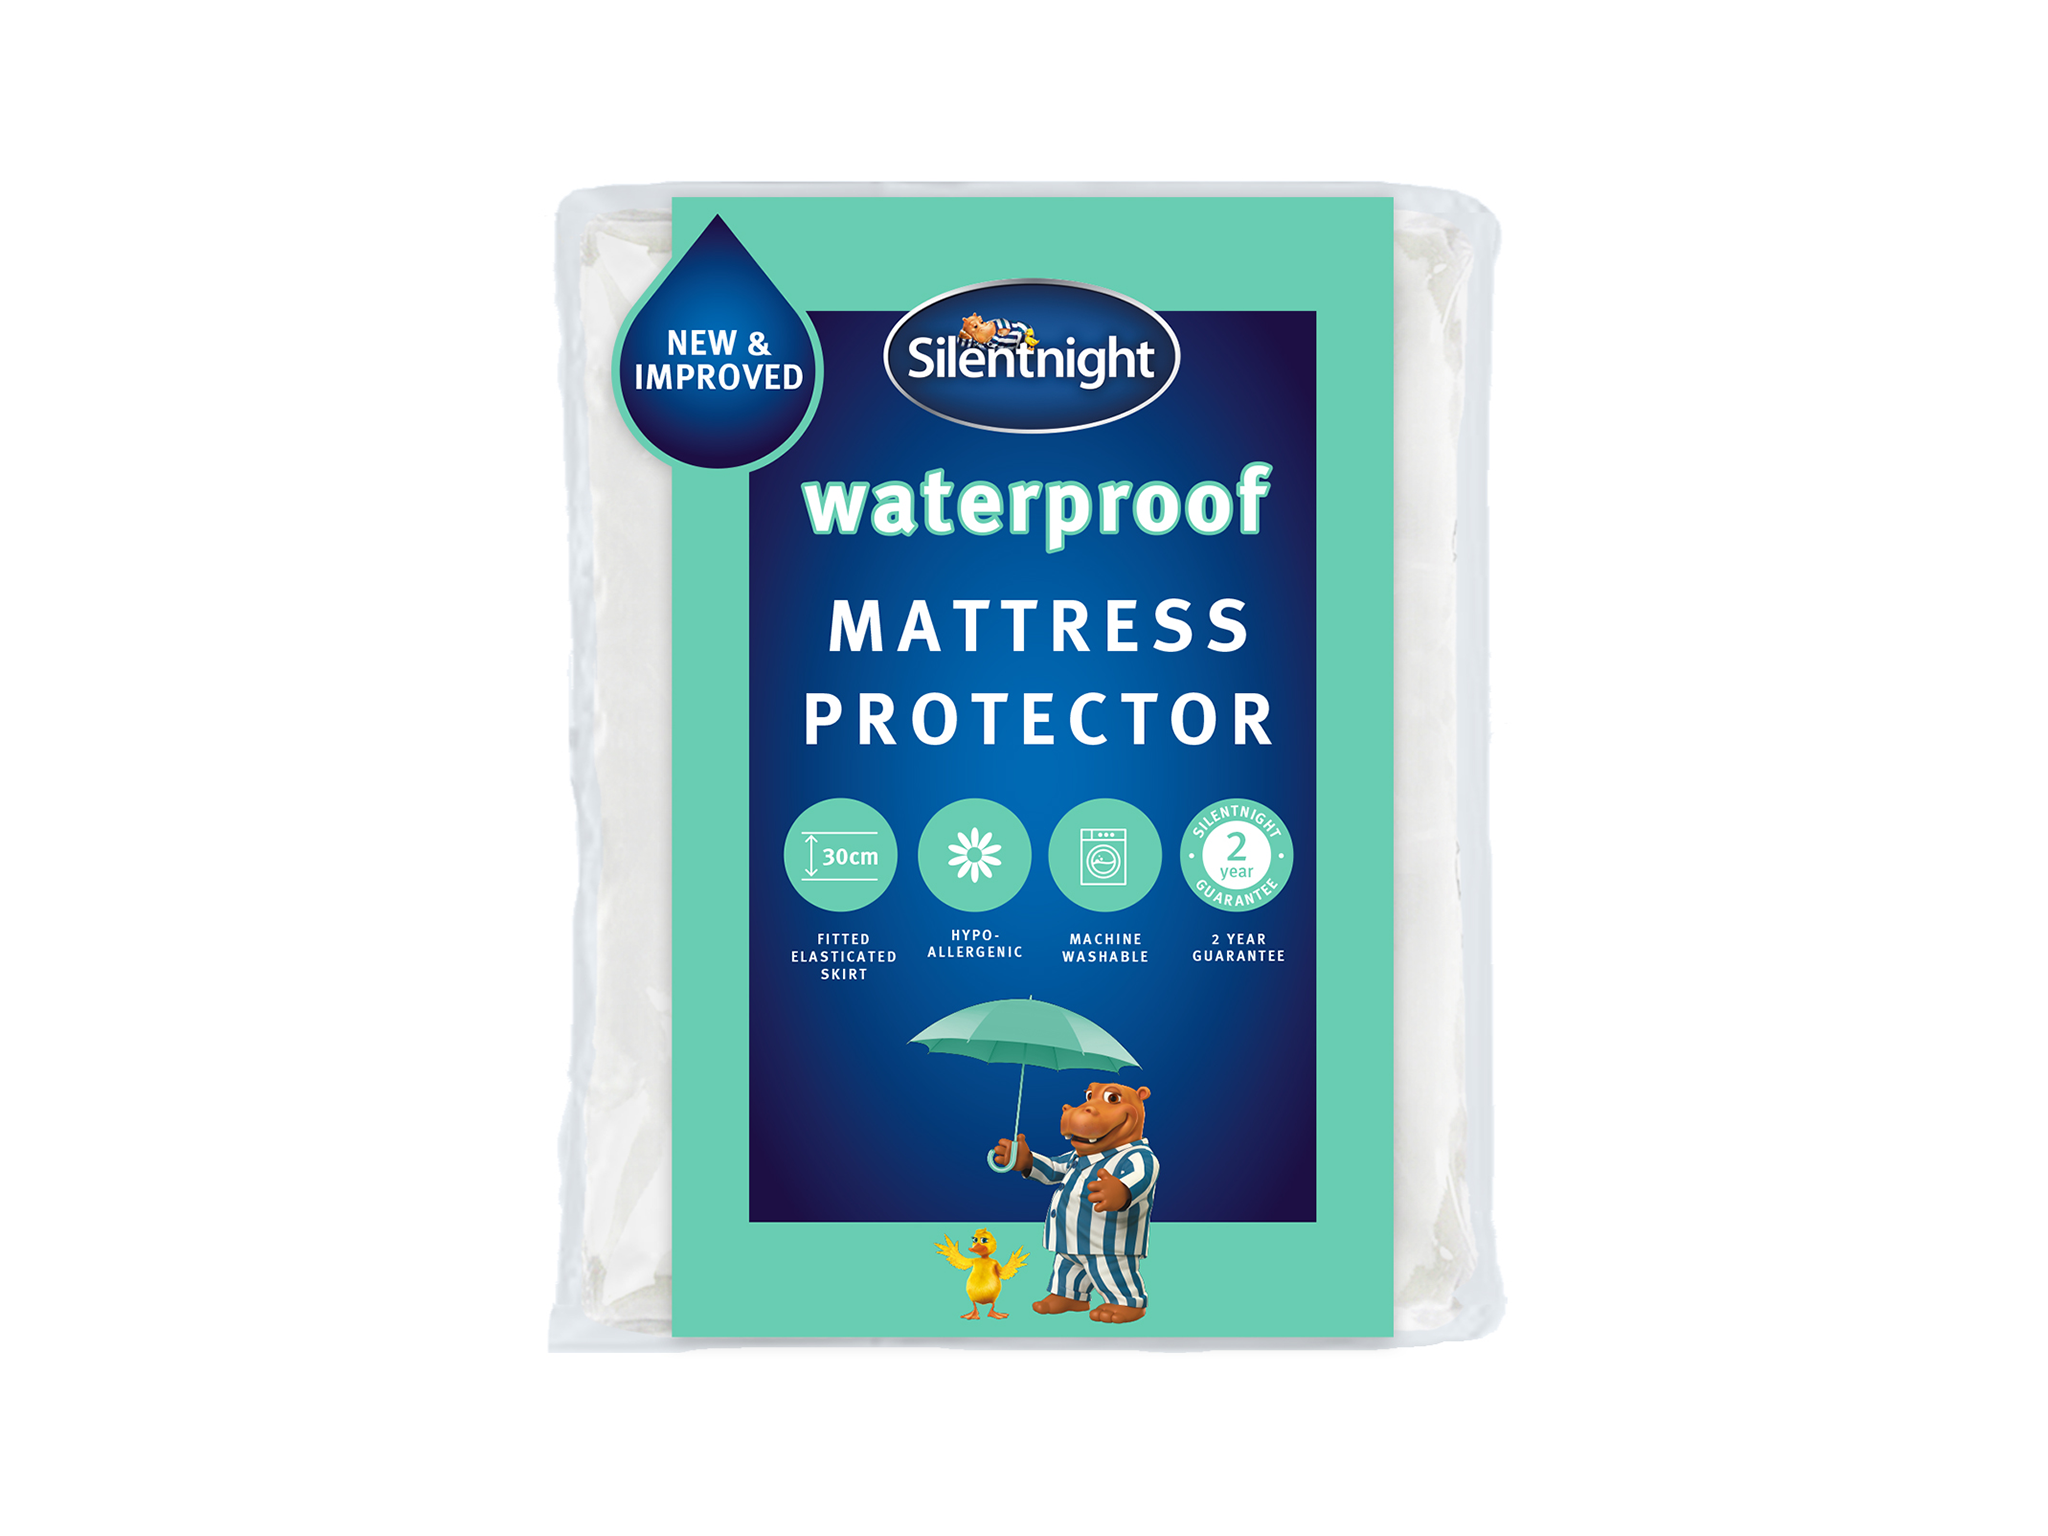 Silentnight waterproof mattress protector.png